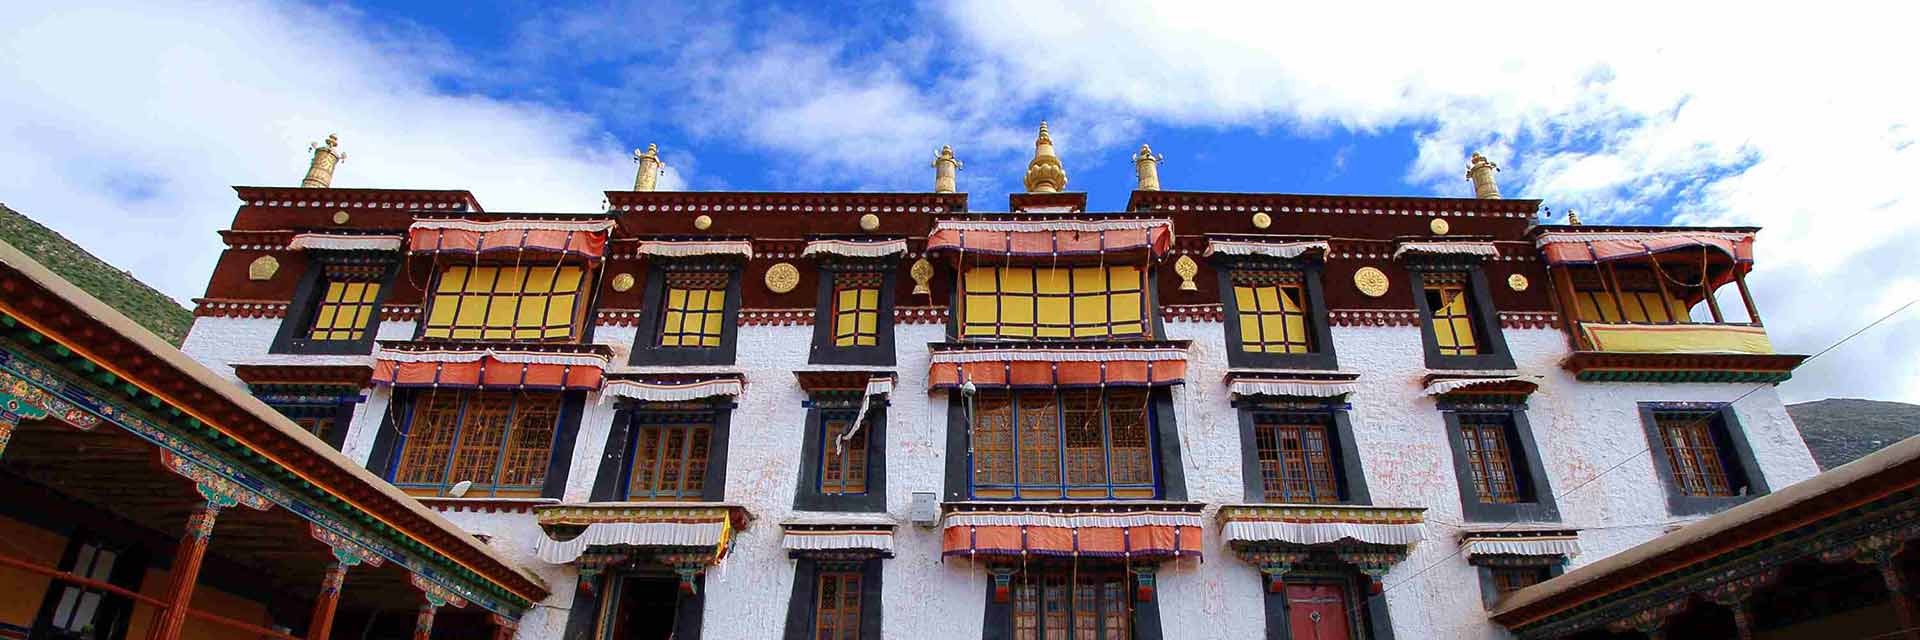 Drepung Monastery Lhasa, Tibet